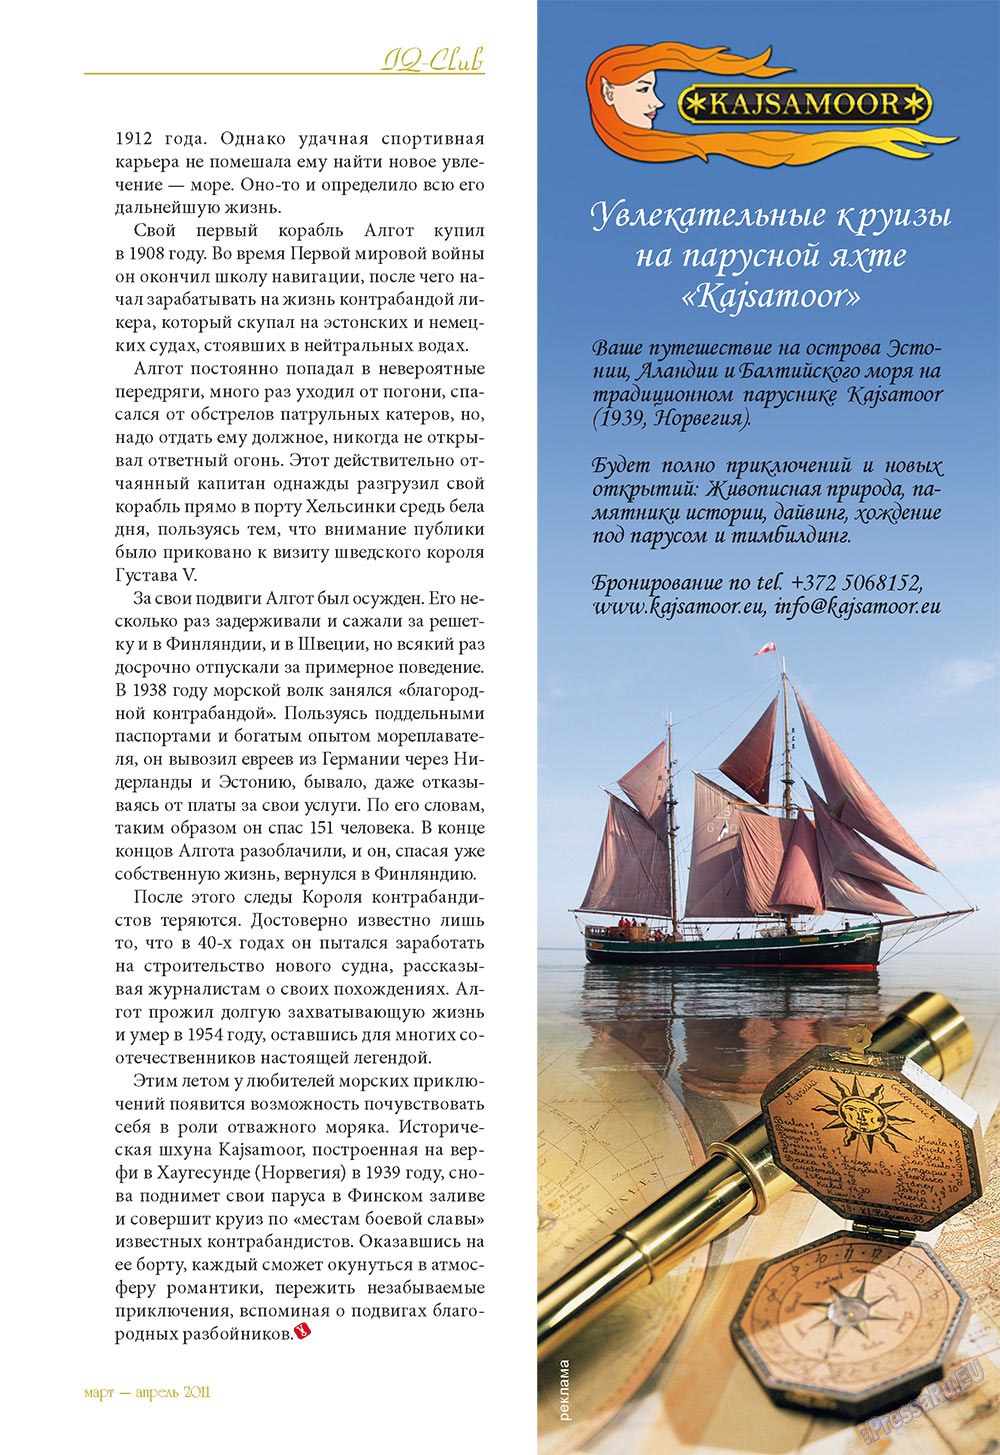 Le Voyageur (журнал). 2011 год, номер 15, стр. 41